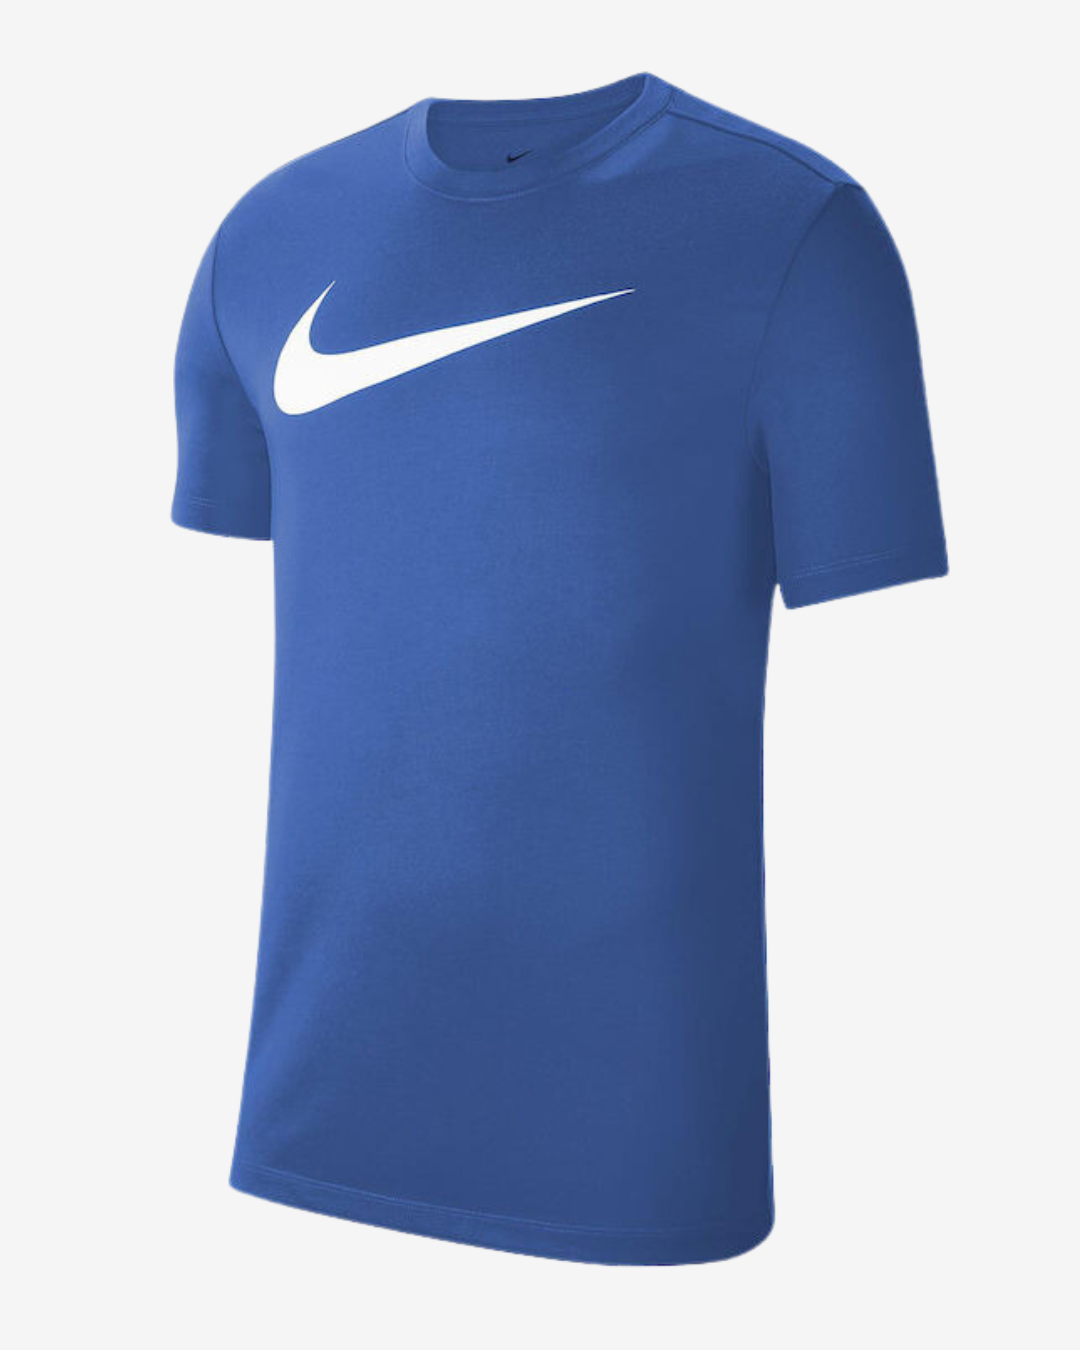 Nike Dri-fit park 20 t-shirt - Blå - Str. 3XL - Modish.dk